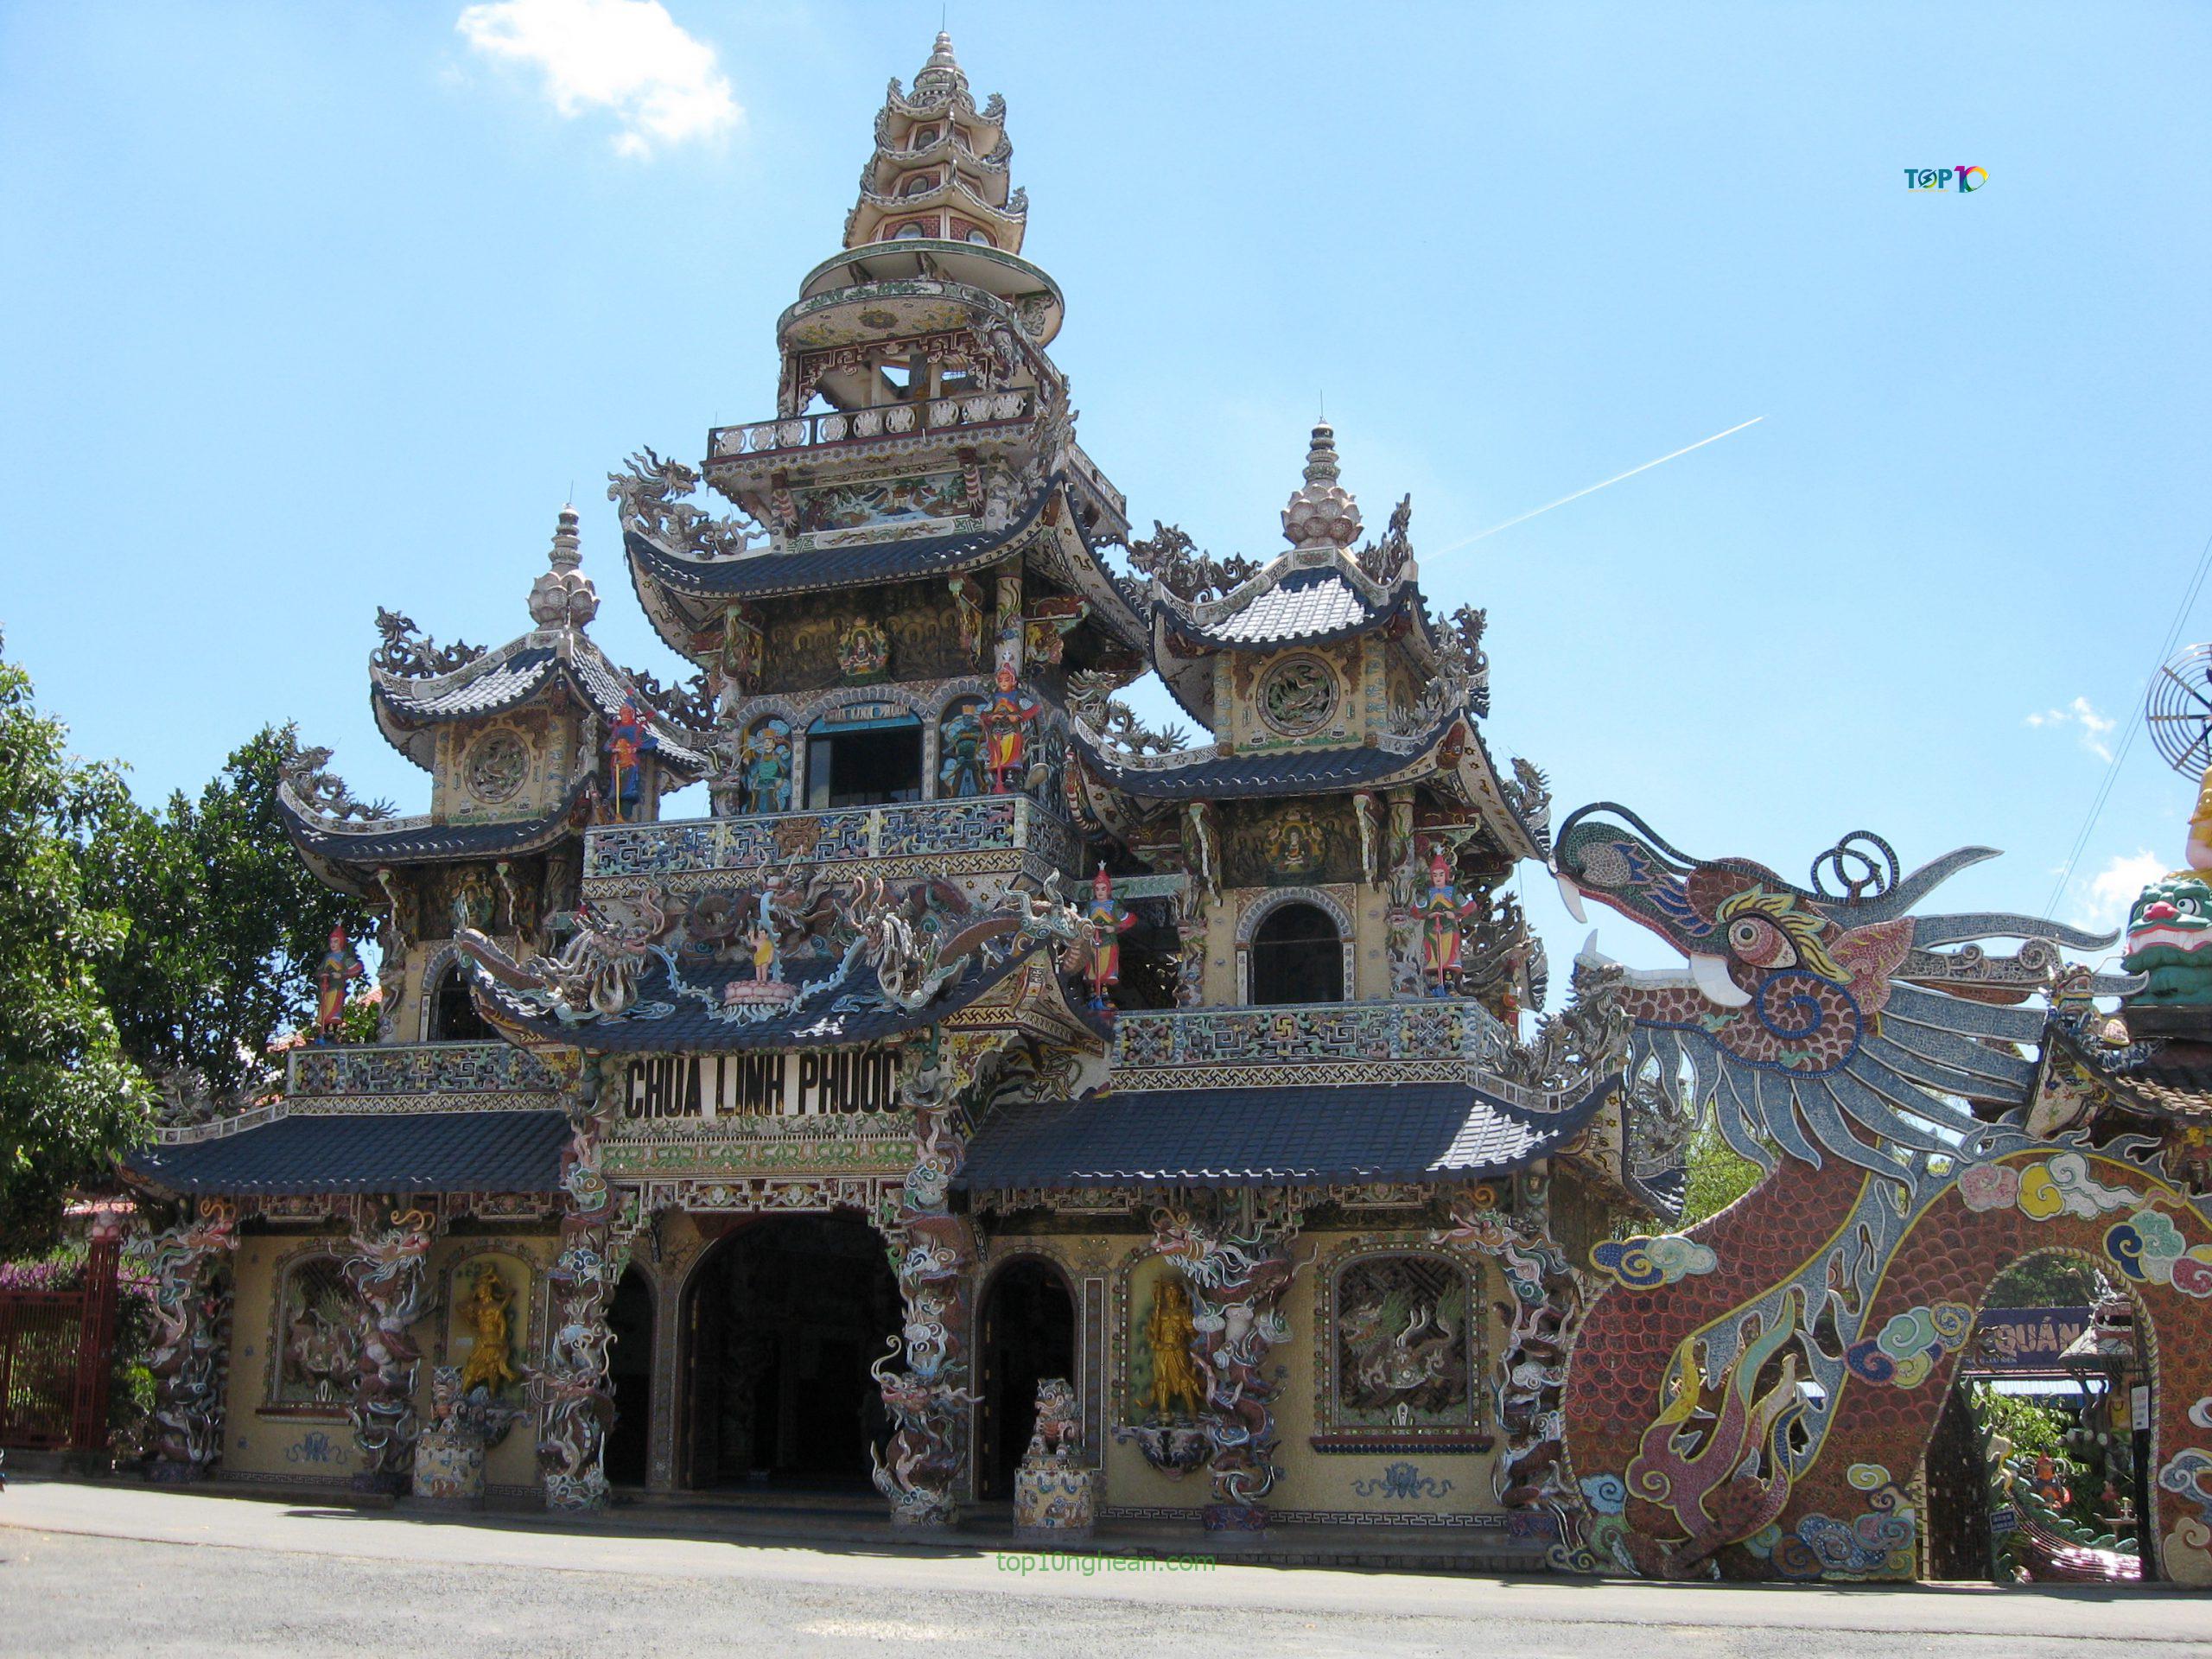 Toàn cảnh cổng chùa Linh Phước 